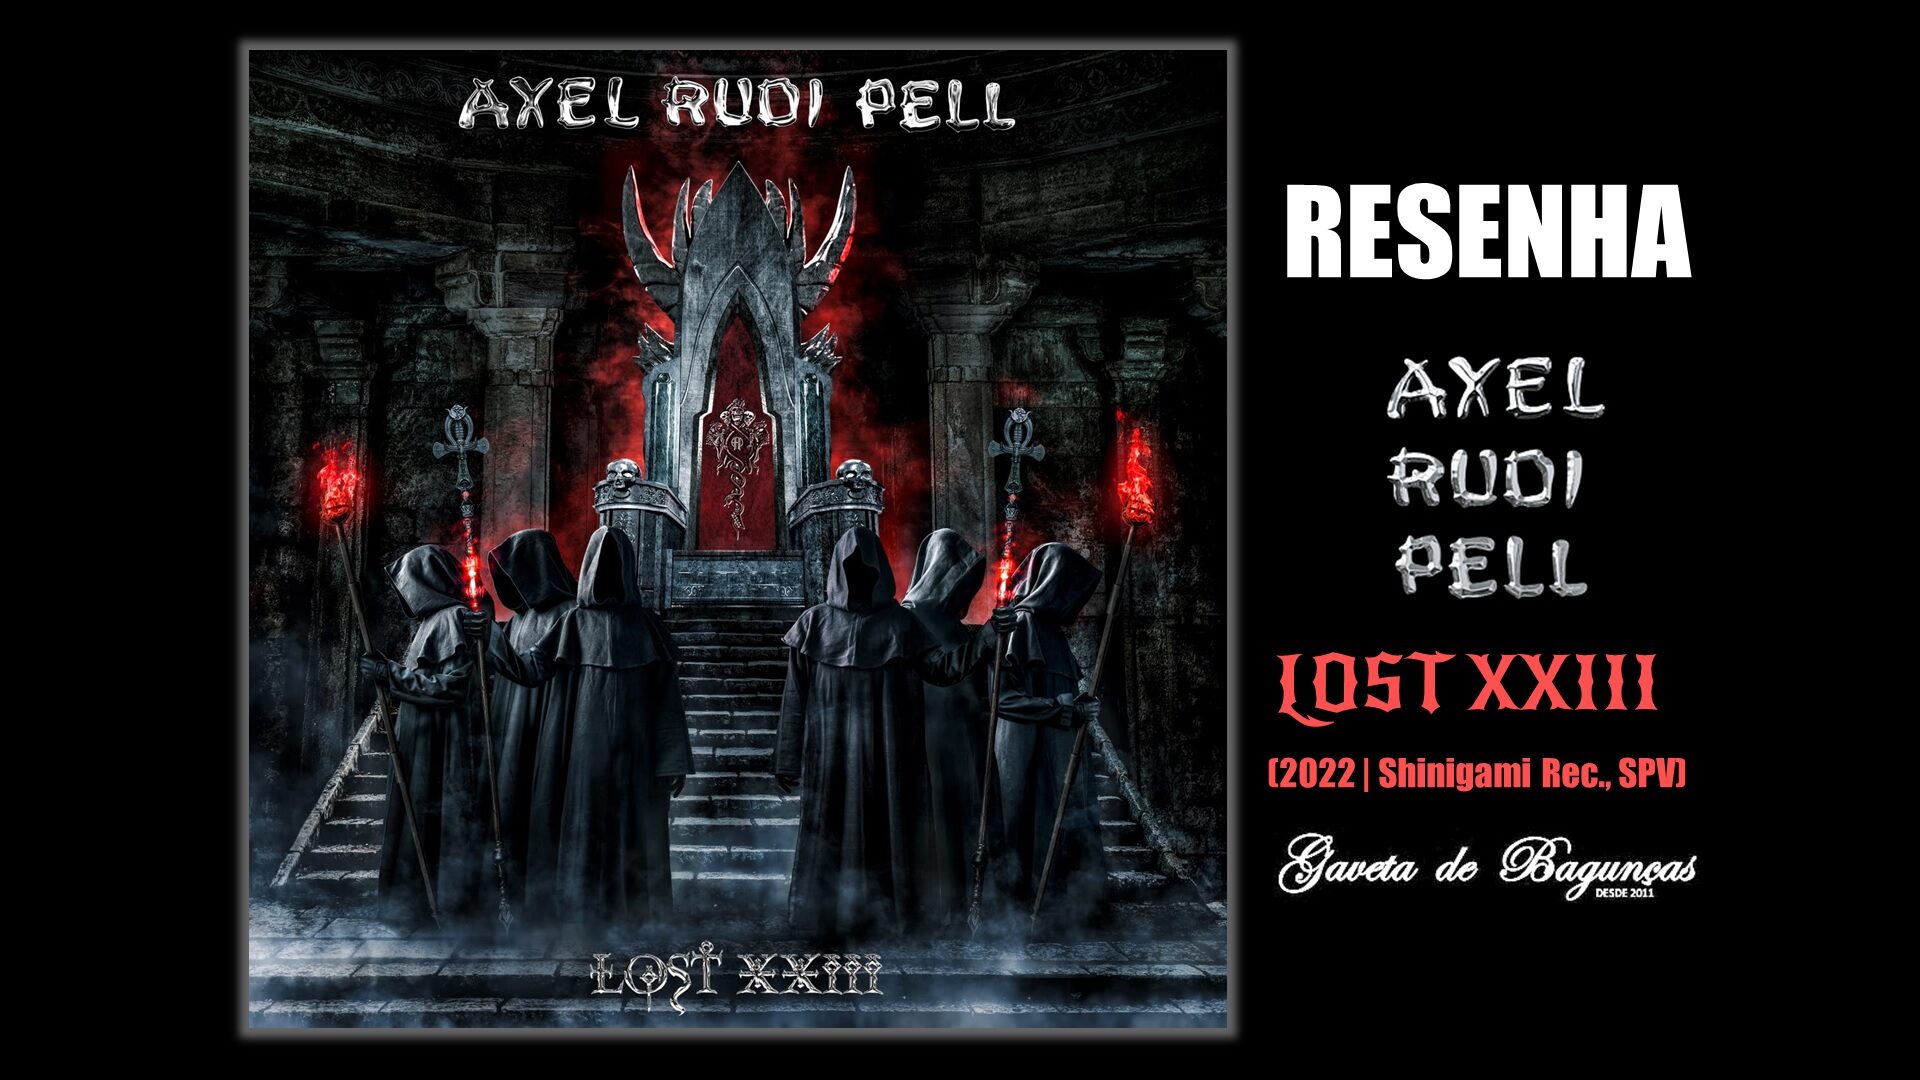 "Lost XXIII" é o vigésimo primeiro disco de estúdio do guitarrista alemão Axel Rudi Pell, trazendo dez novas músicas que reafirmam suas marcas registradas: peso, classe e melodia.